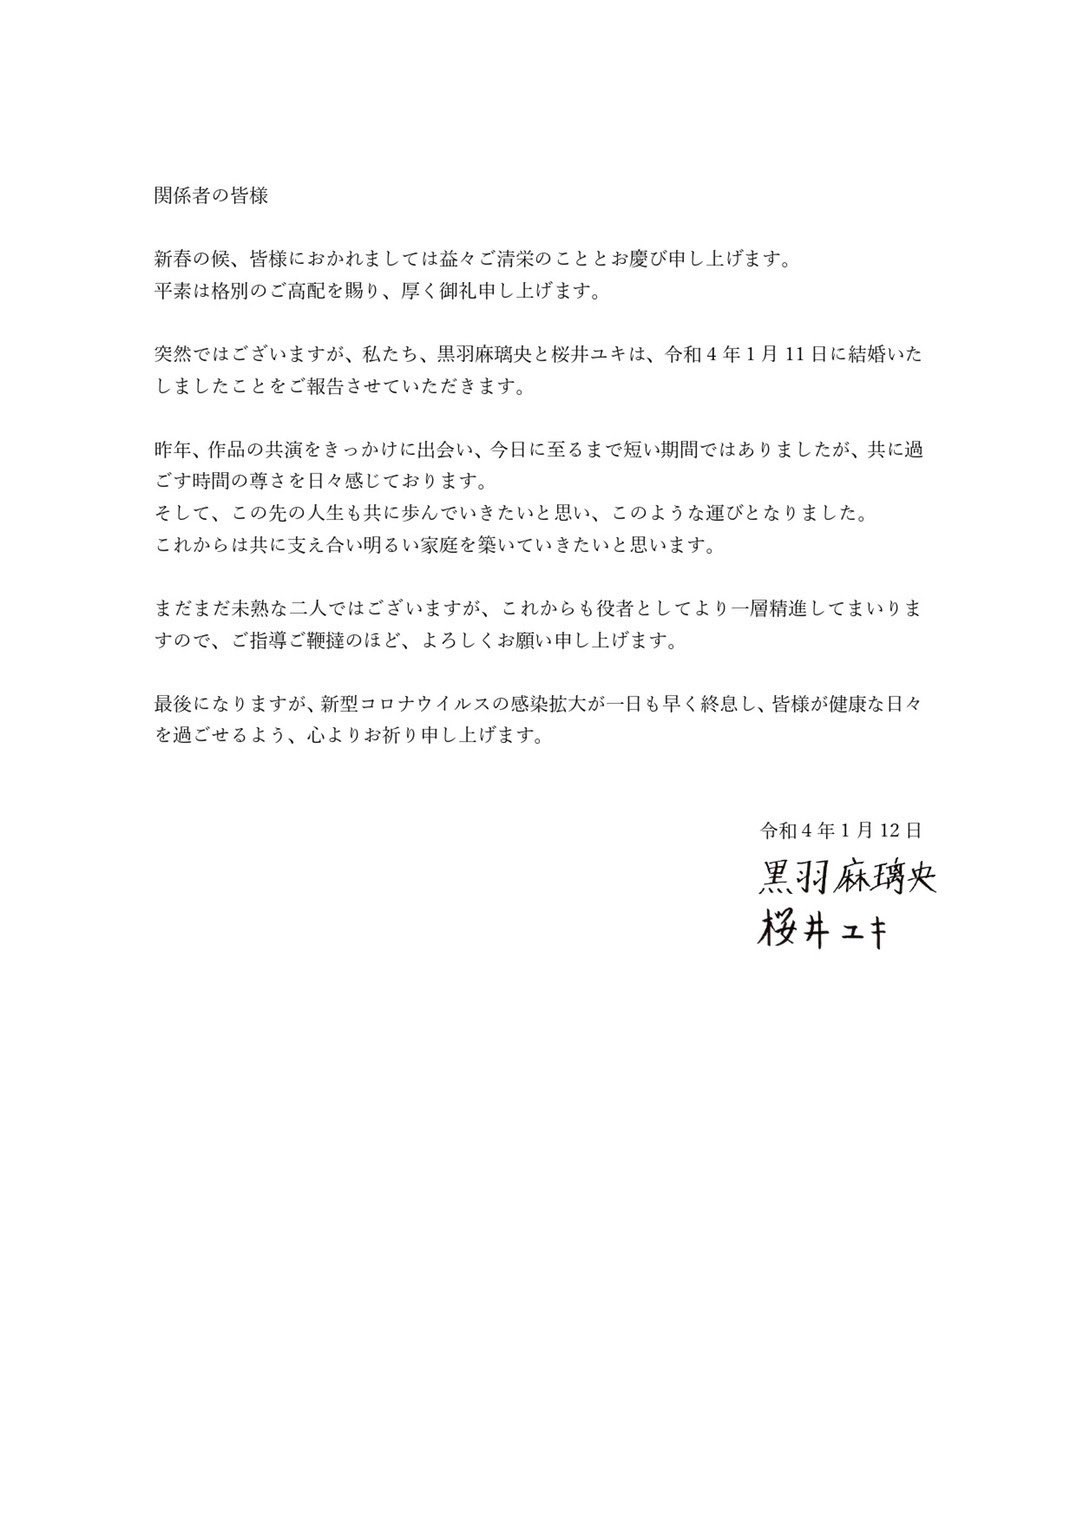 桜井ユキさんと黒羽麻璃央さんの結婚発表文書